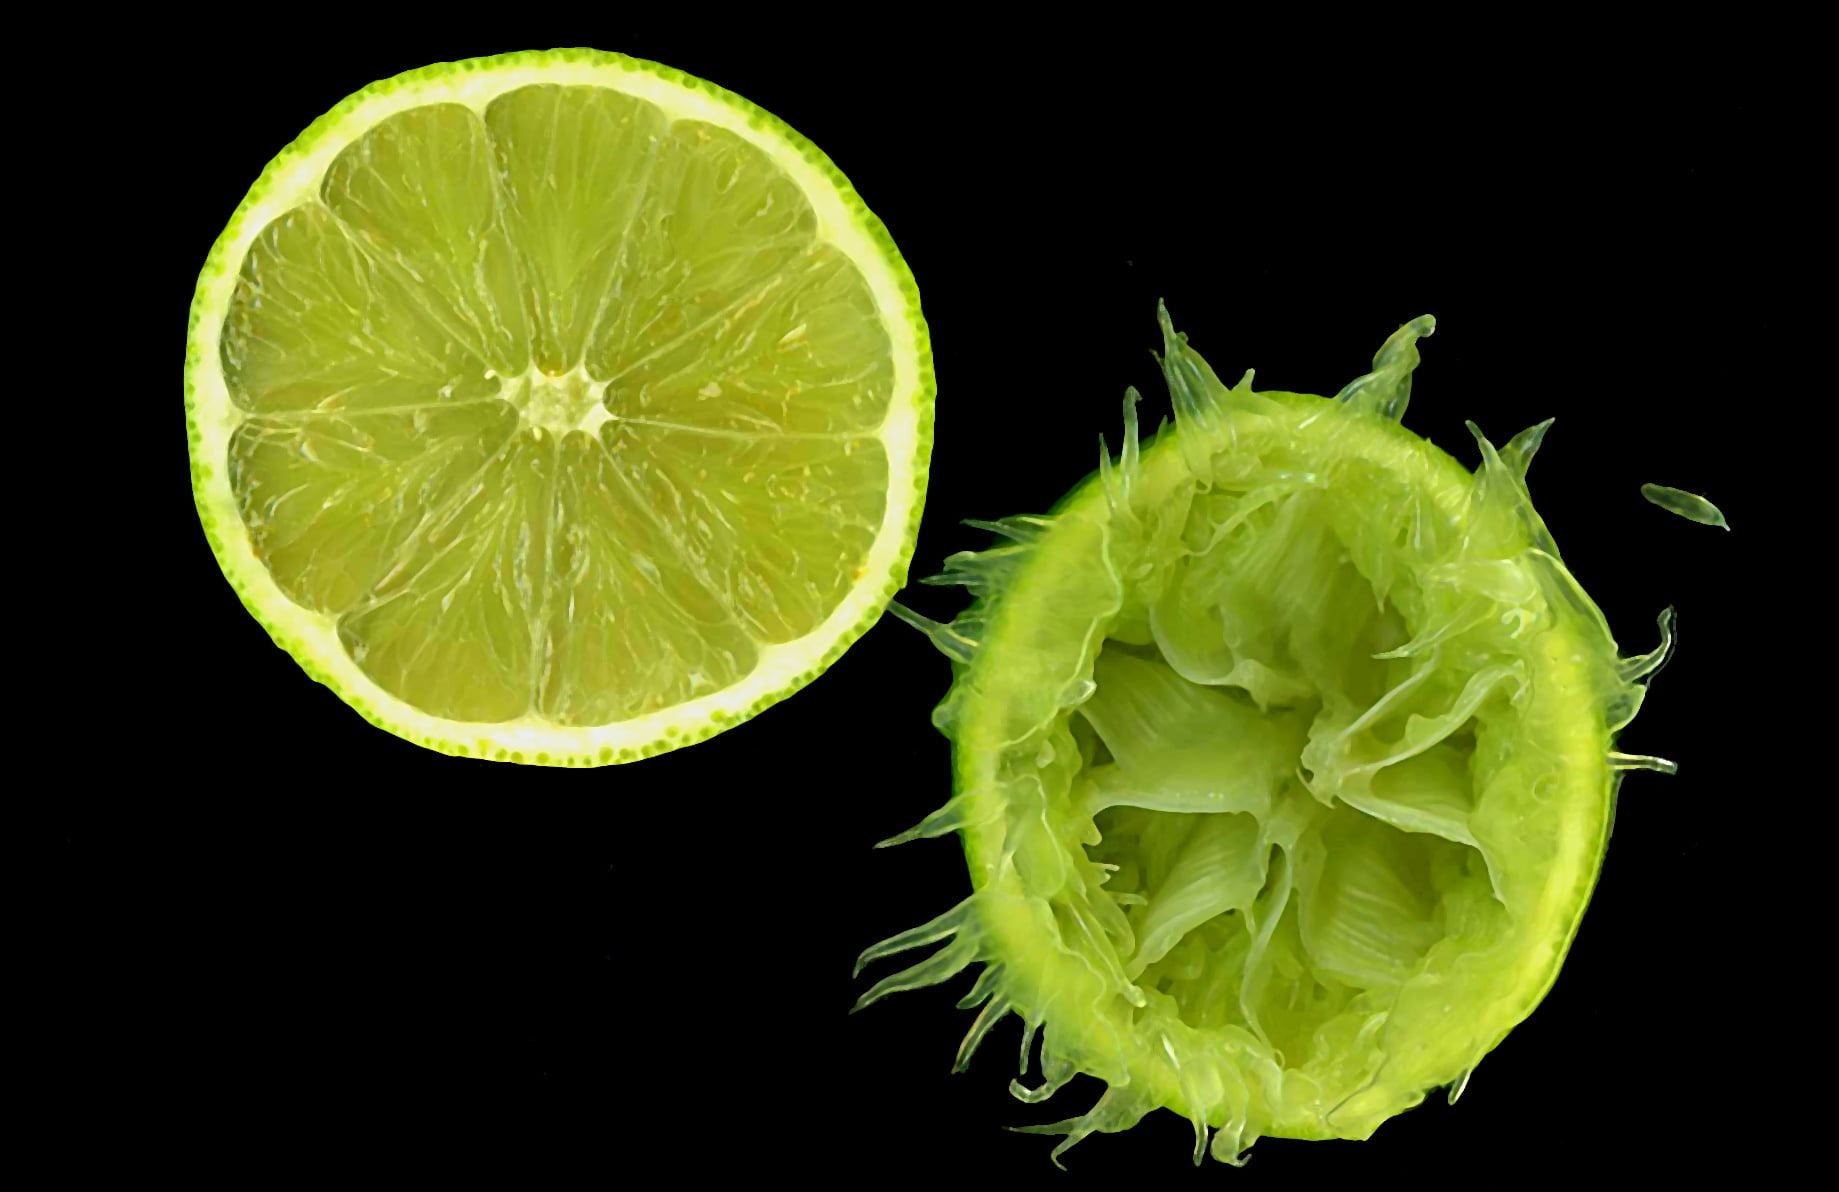 green sliced lemon